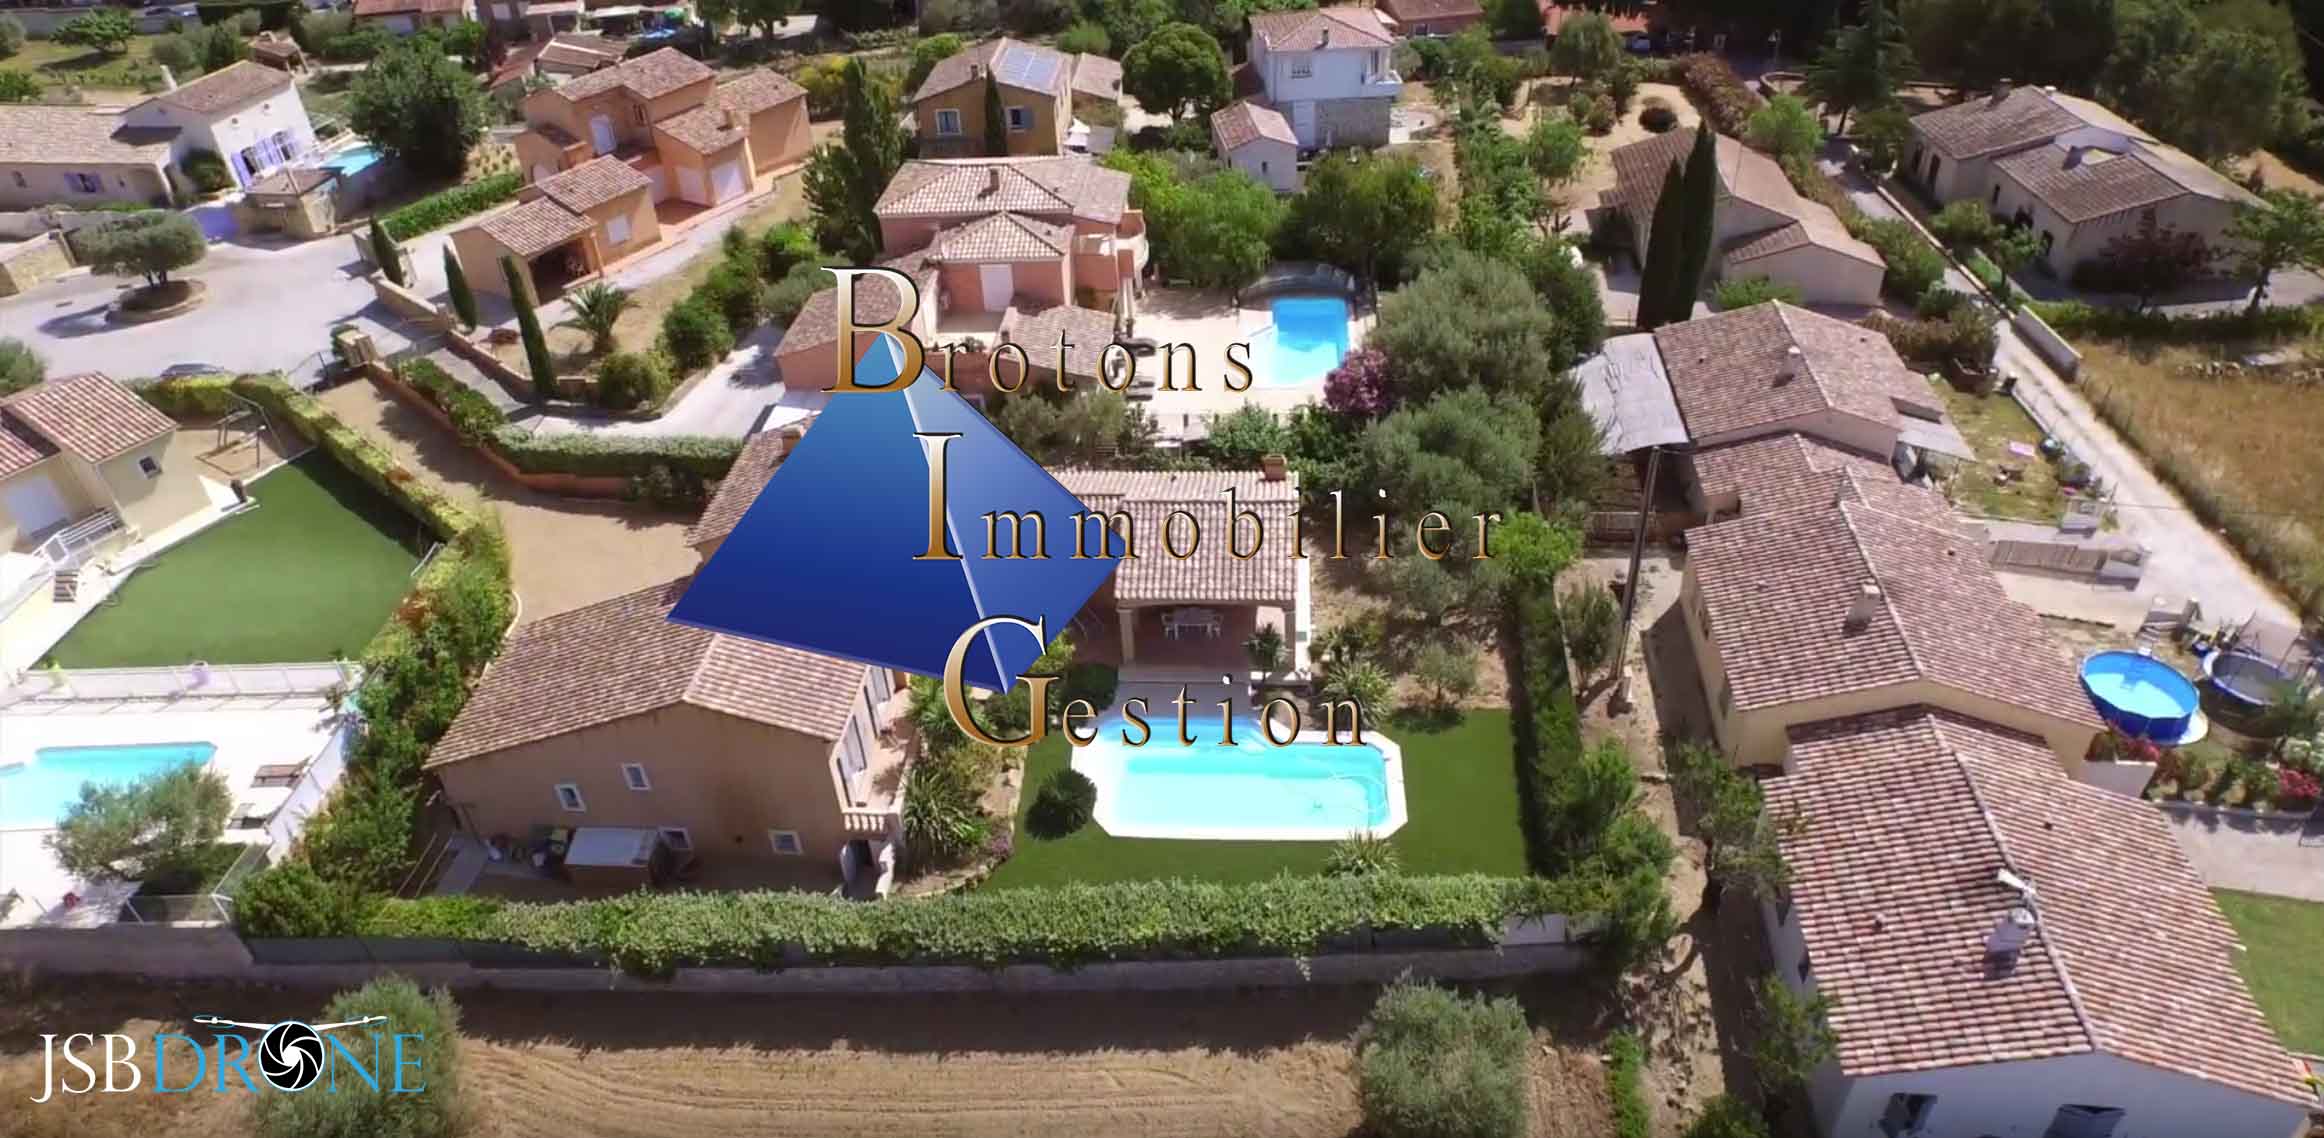 Très belle villa T6 prise de vue aérienne en drone jsb